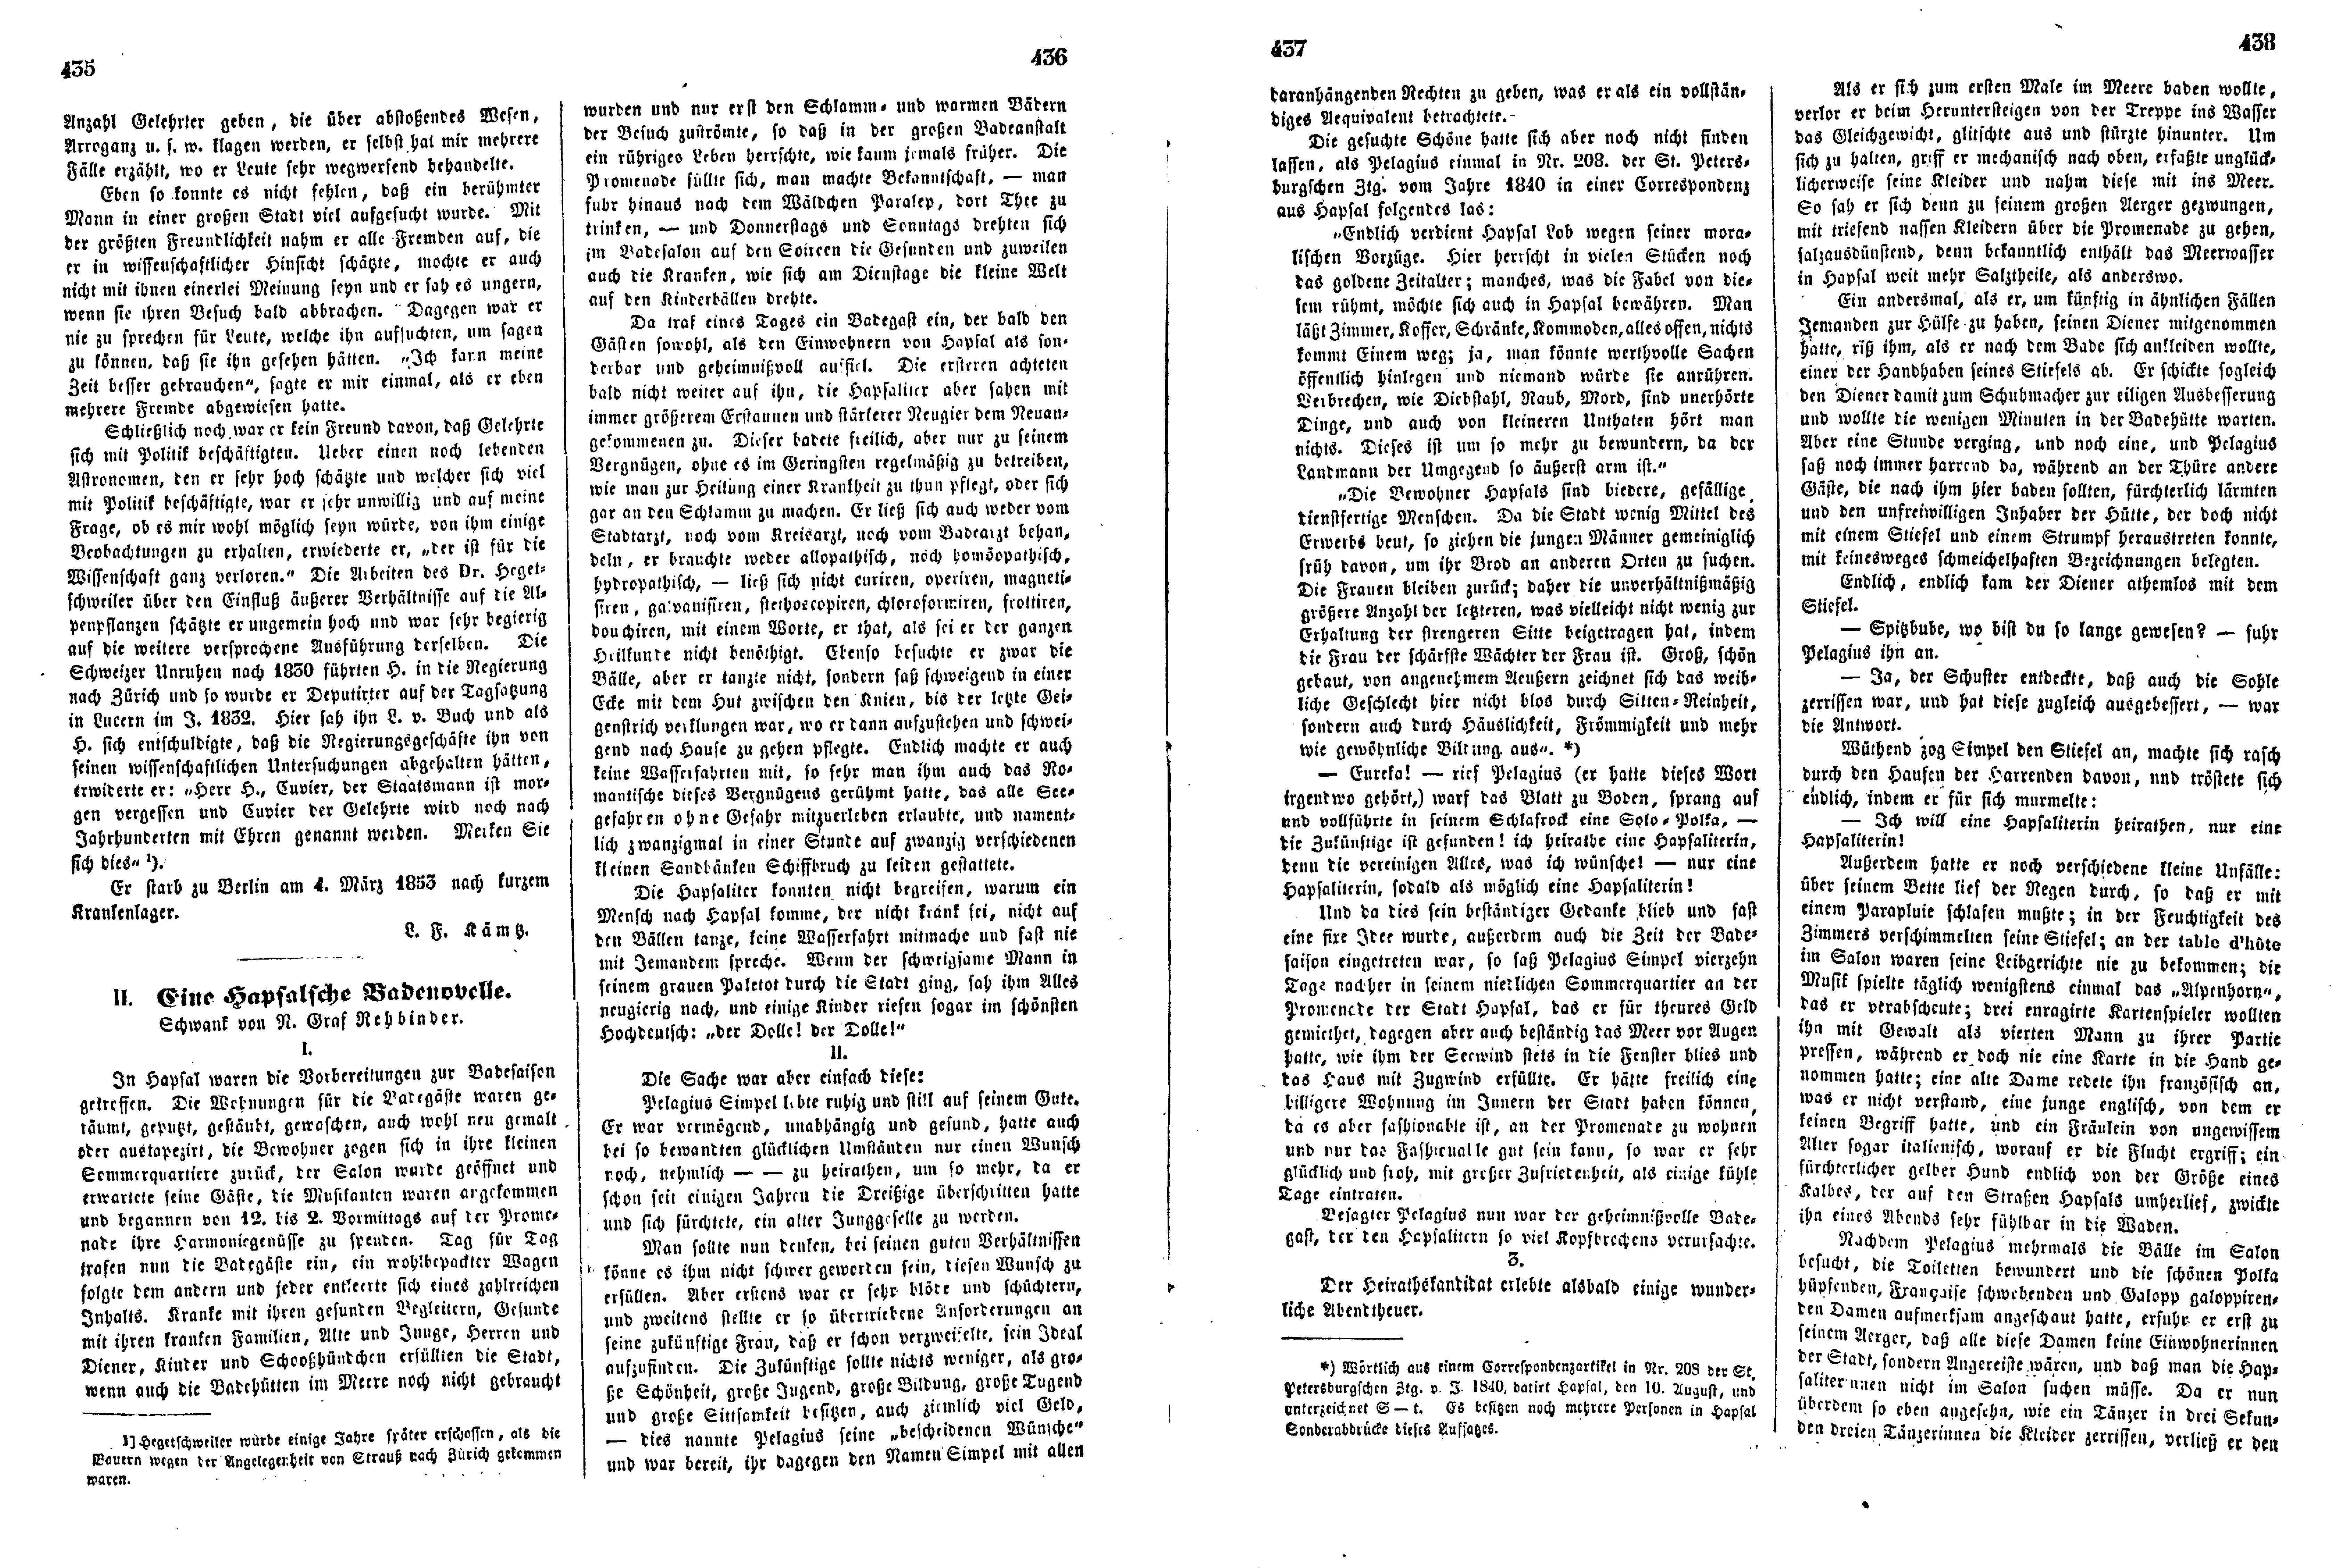 Eine Hapsalsche Badenovelle (1853) | 1. (435-438) Main body of text